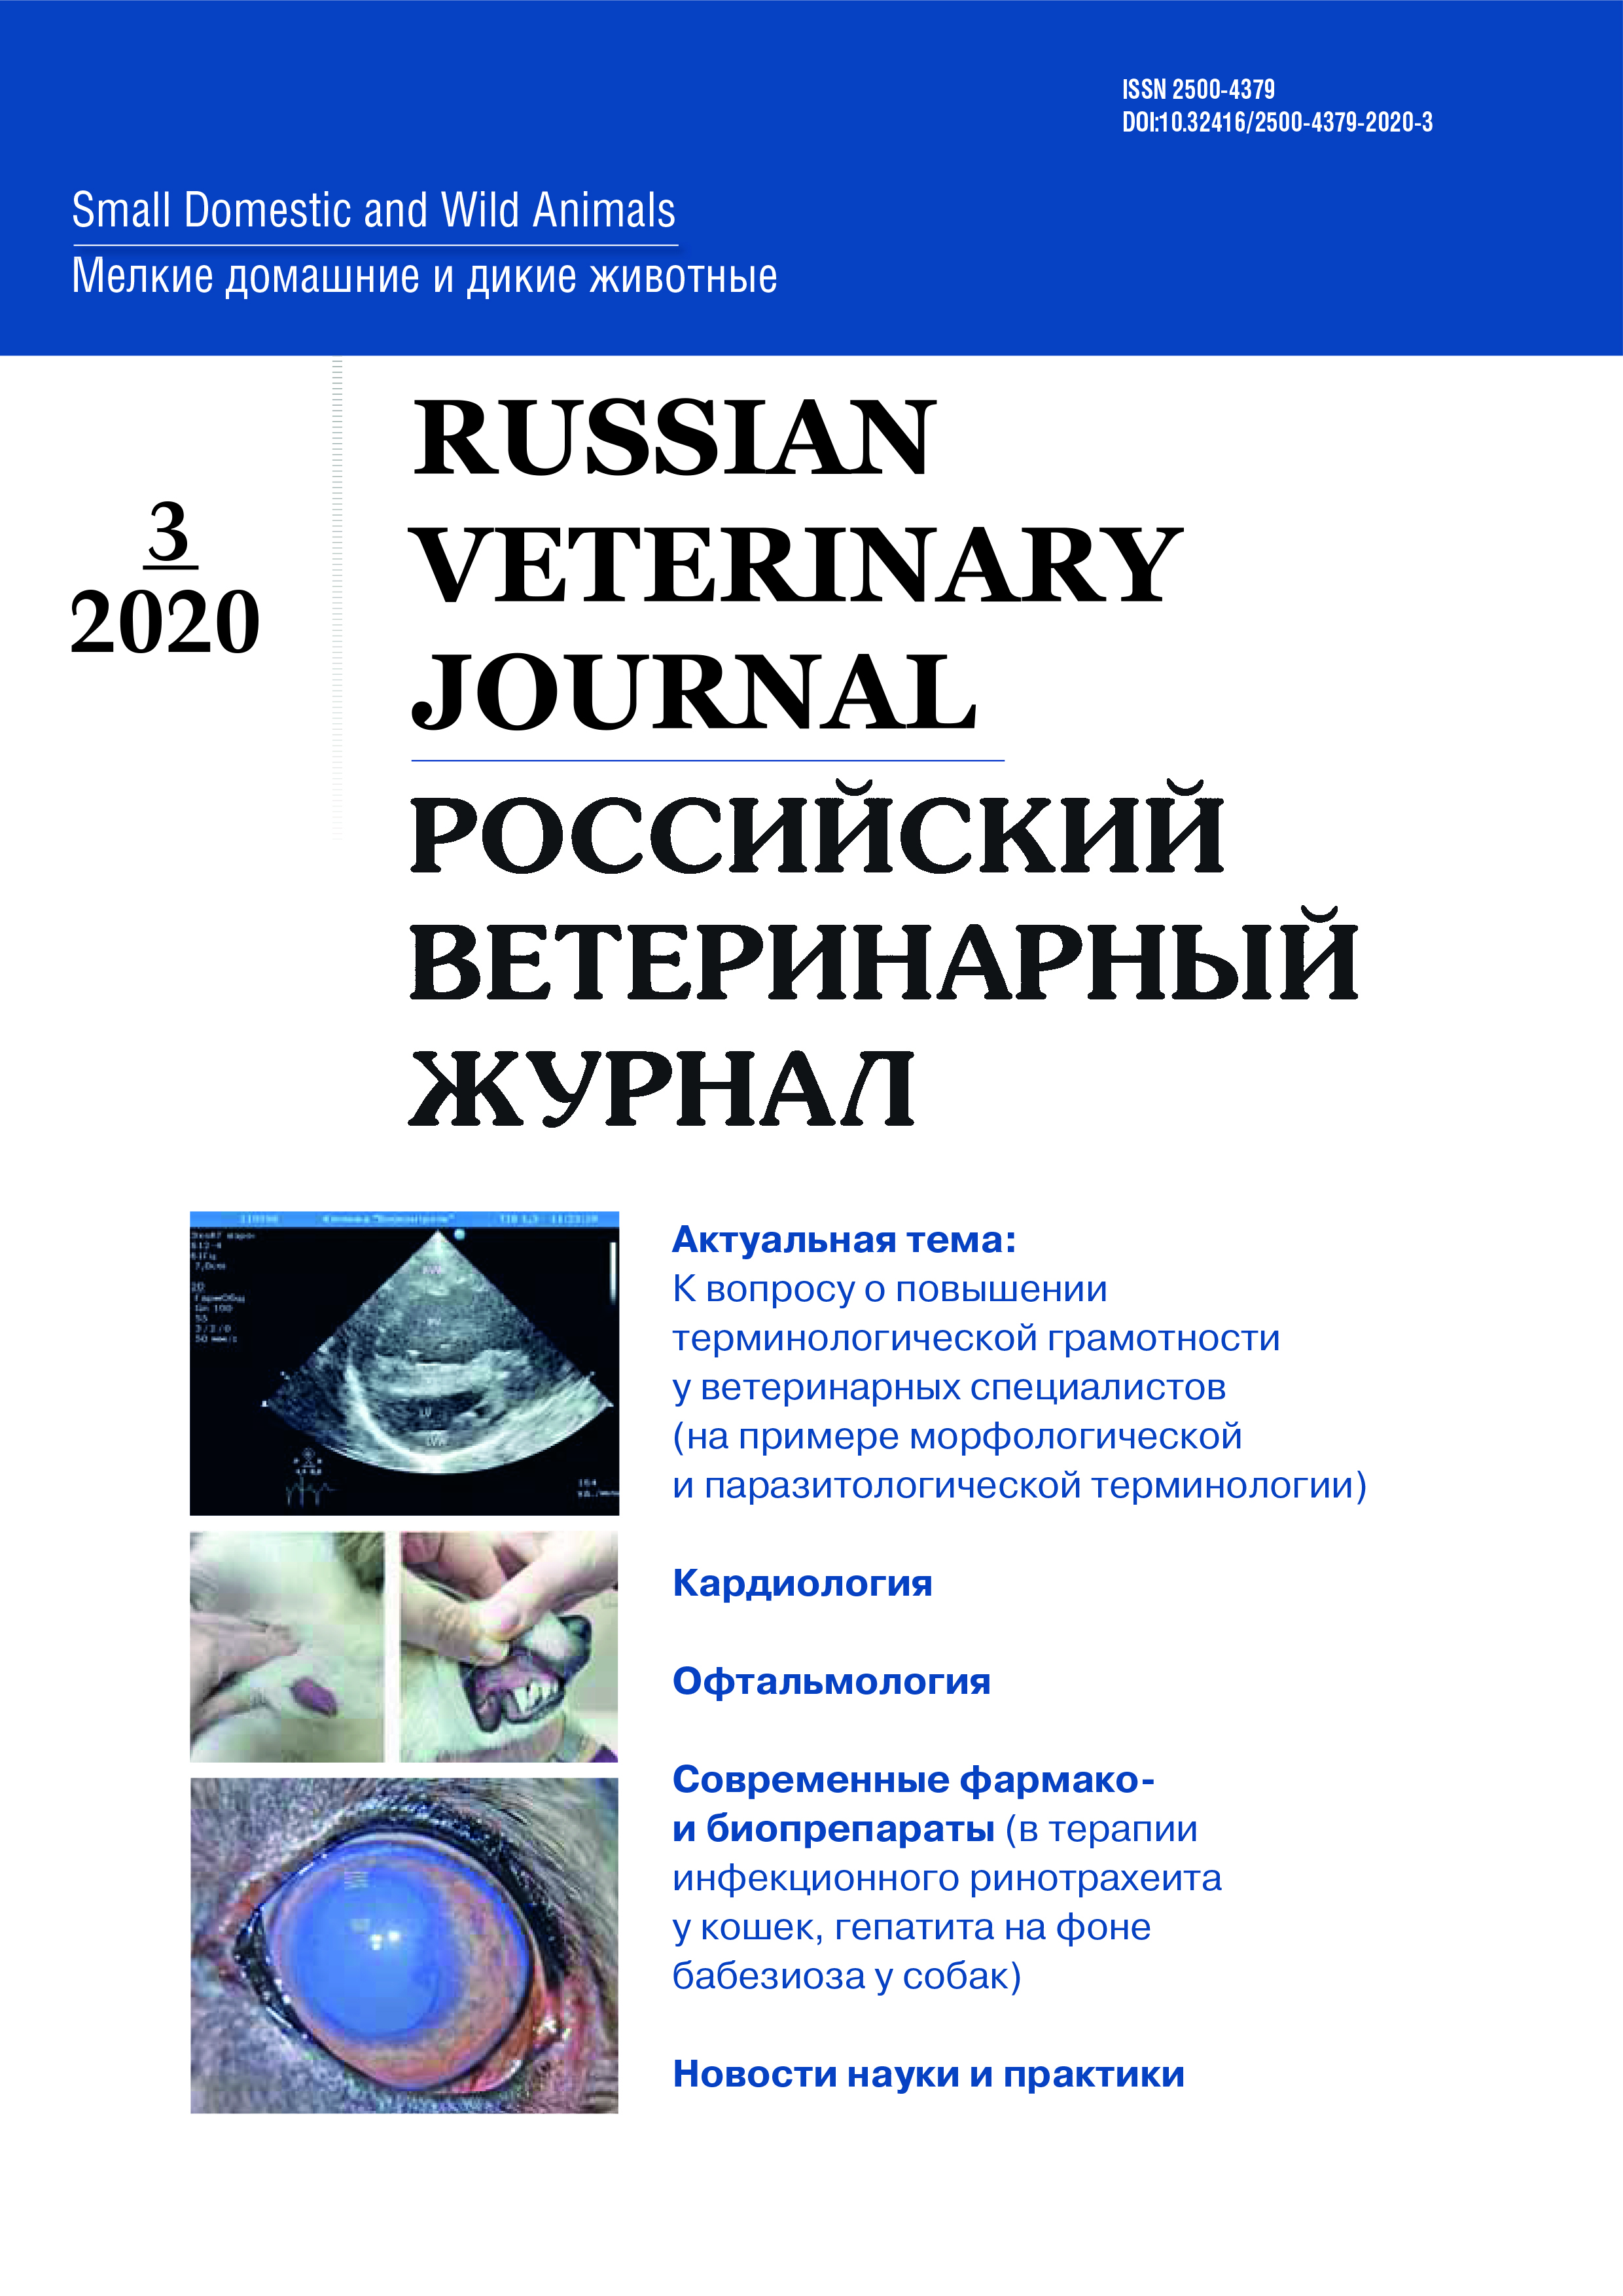             Российский ветеринарный журнал
    